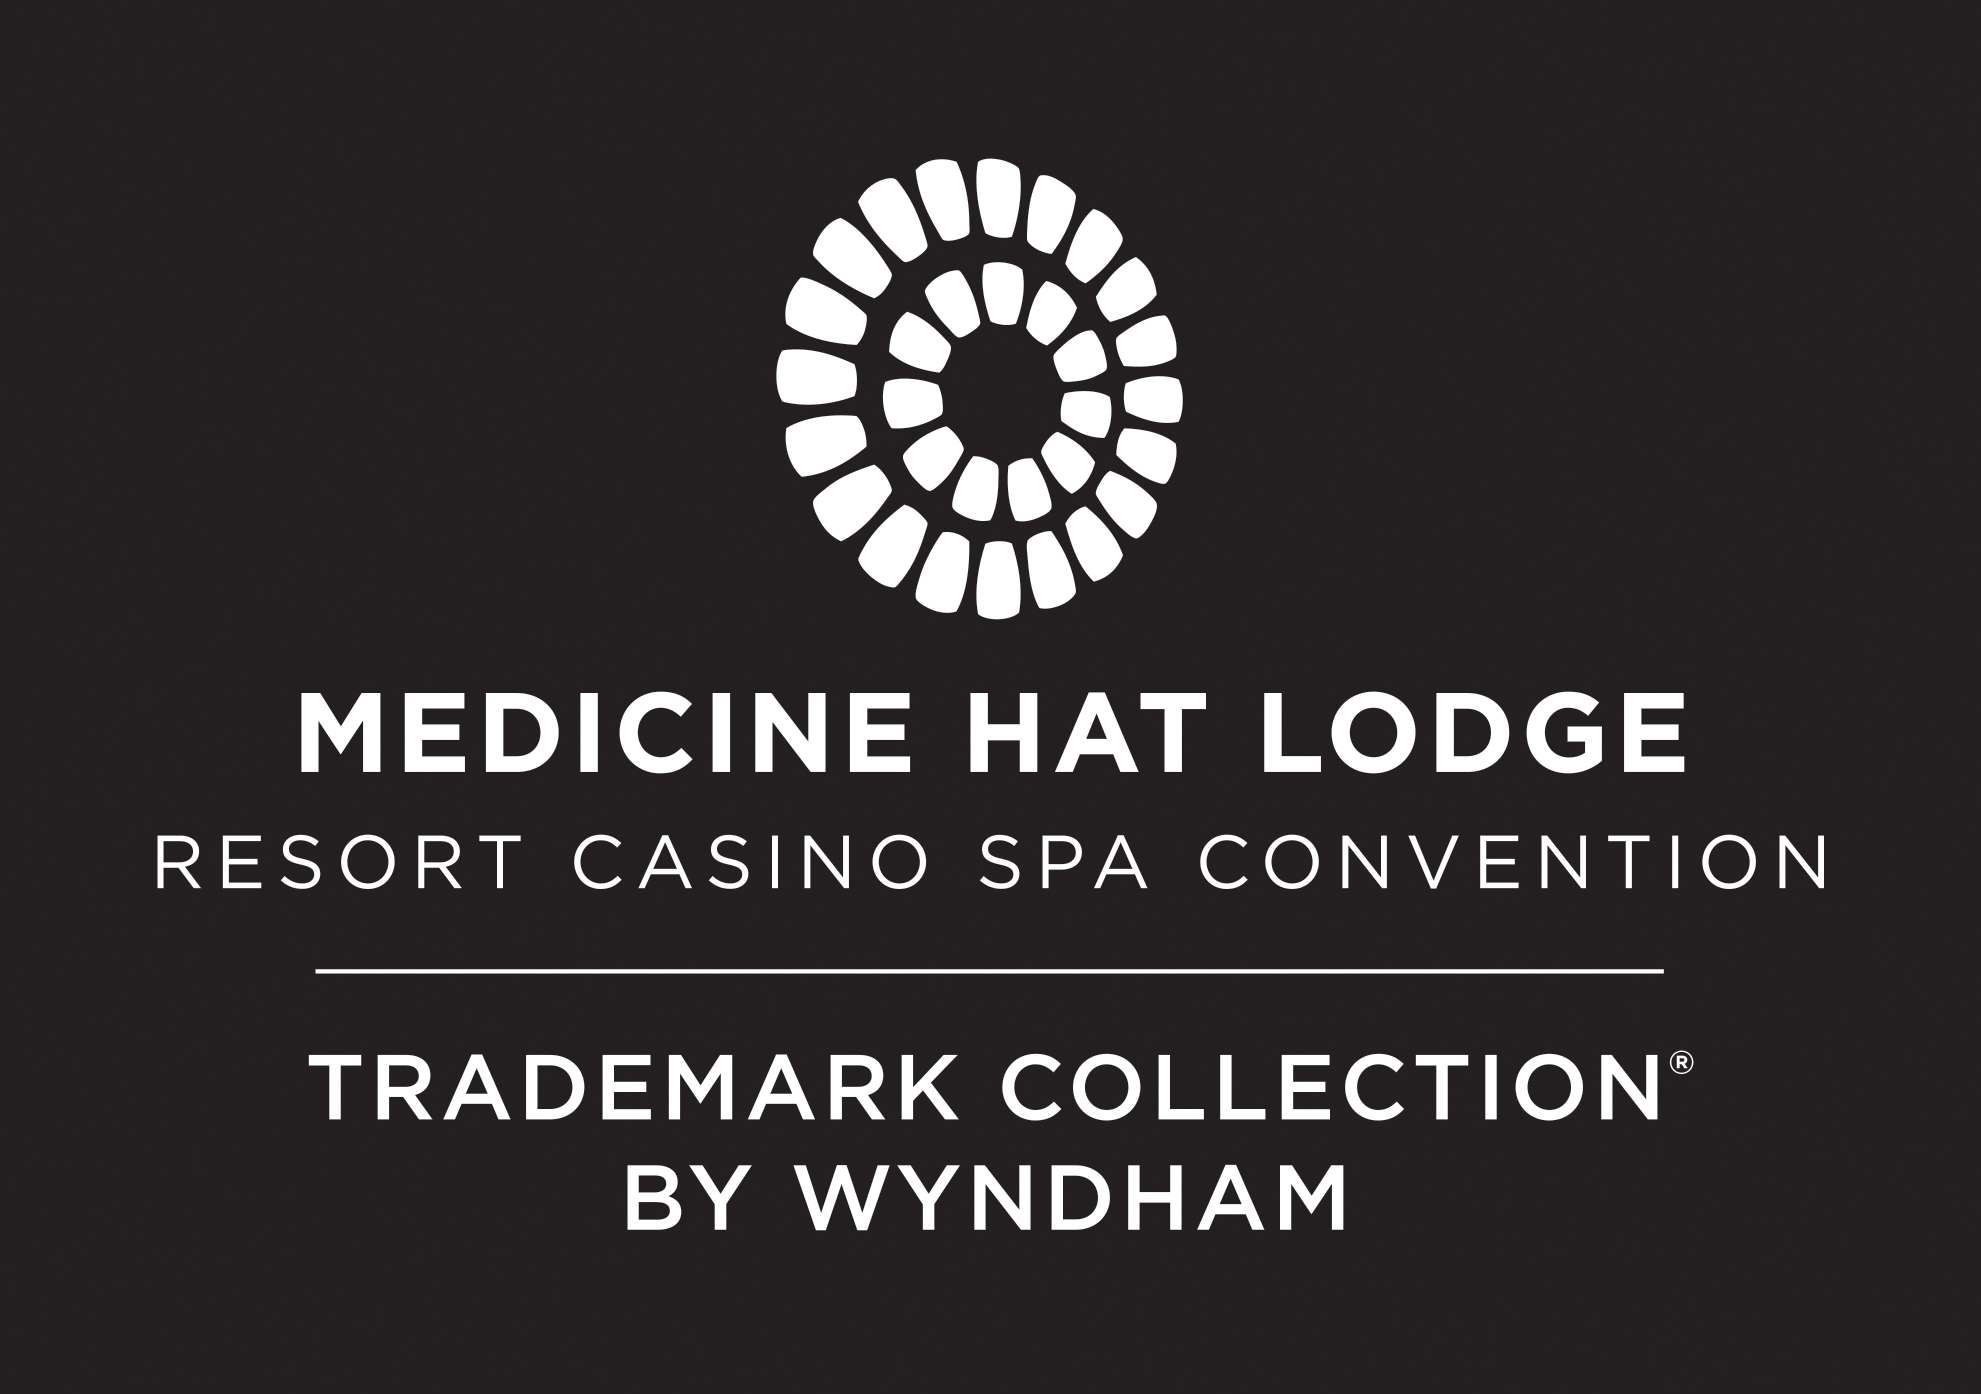 MH Lodge Resort Casino